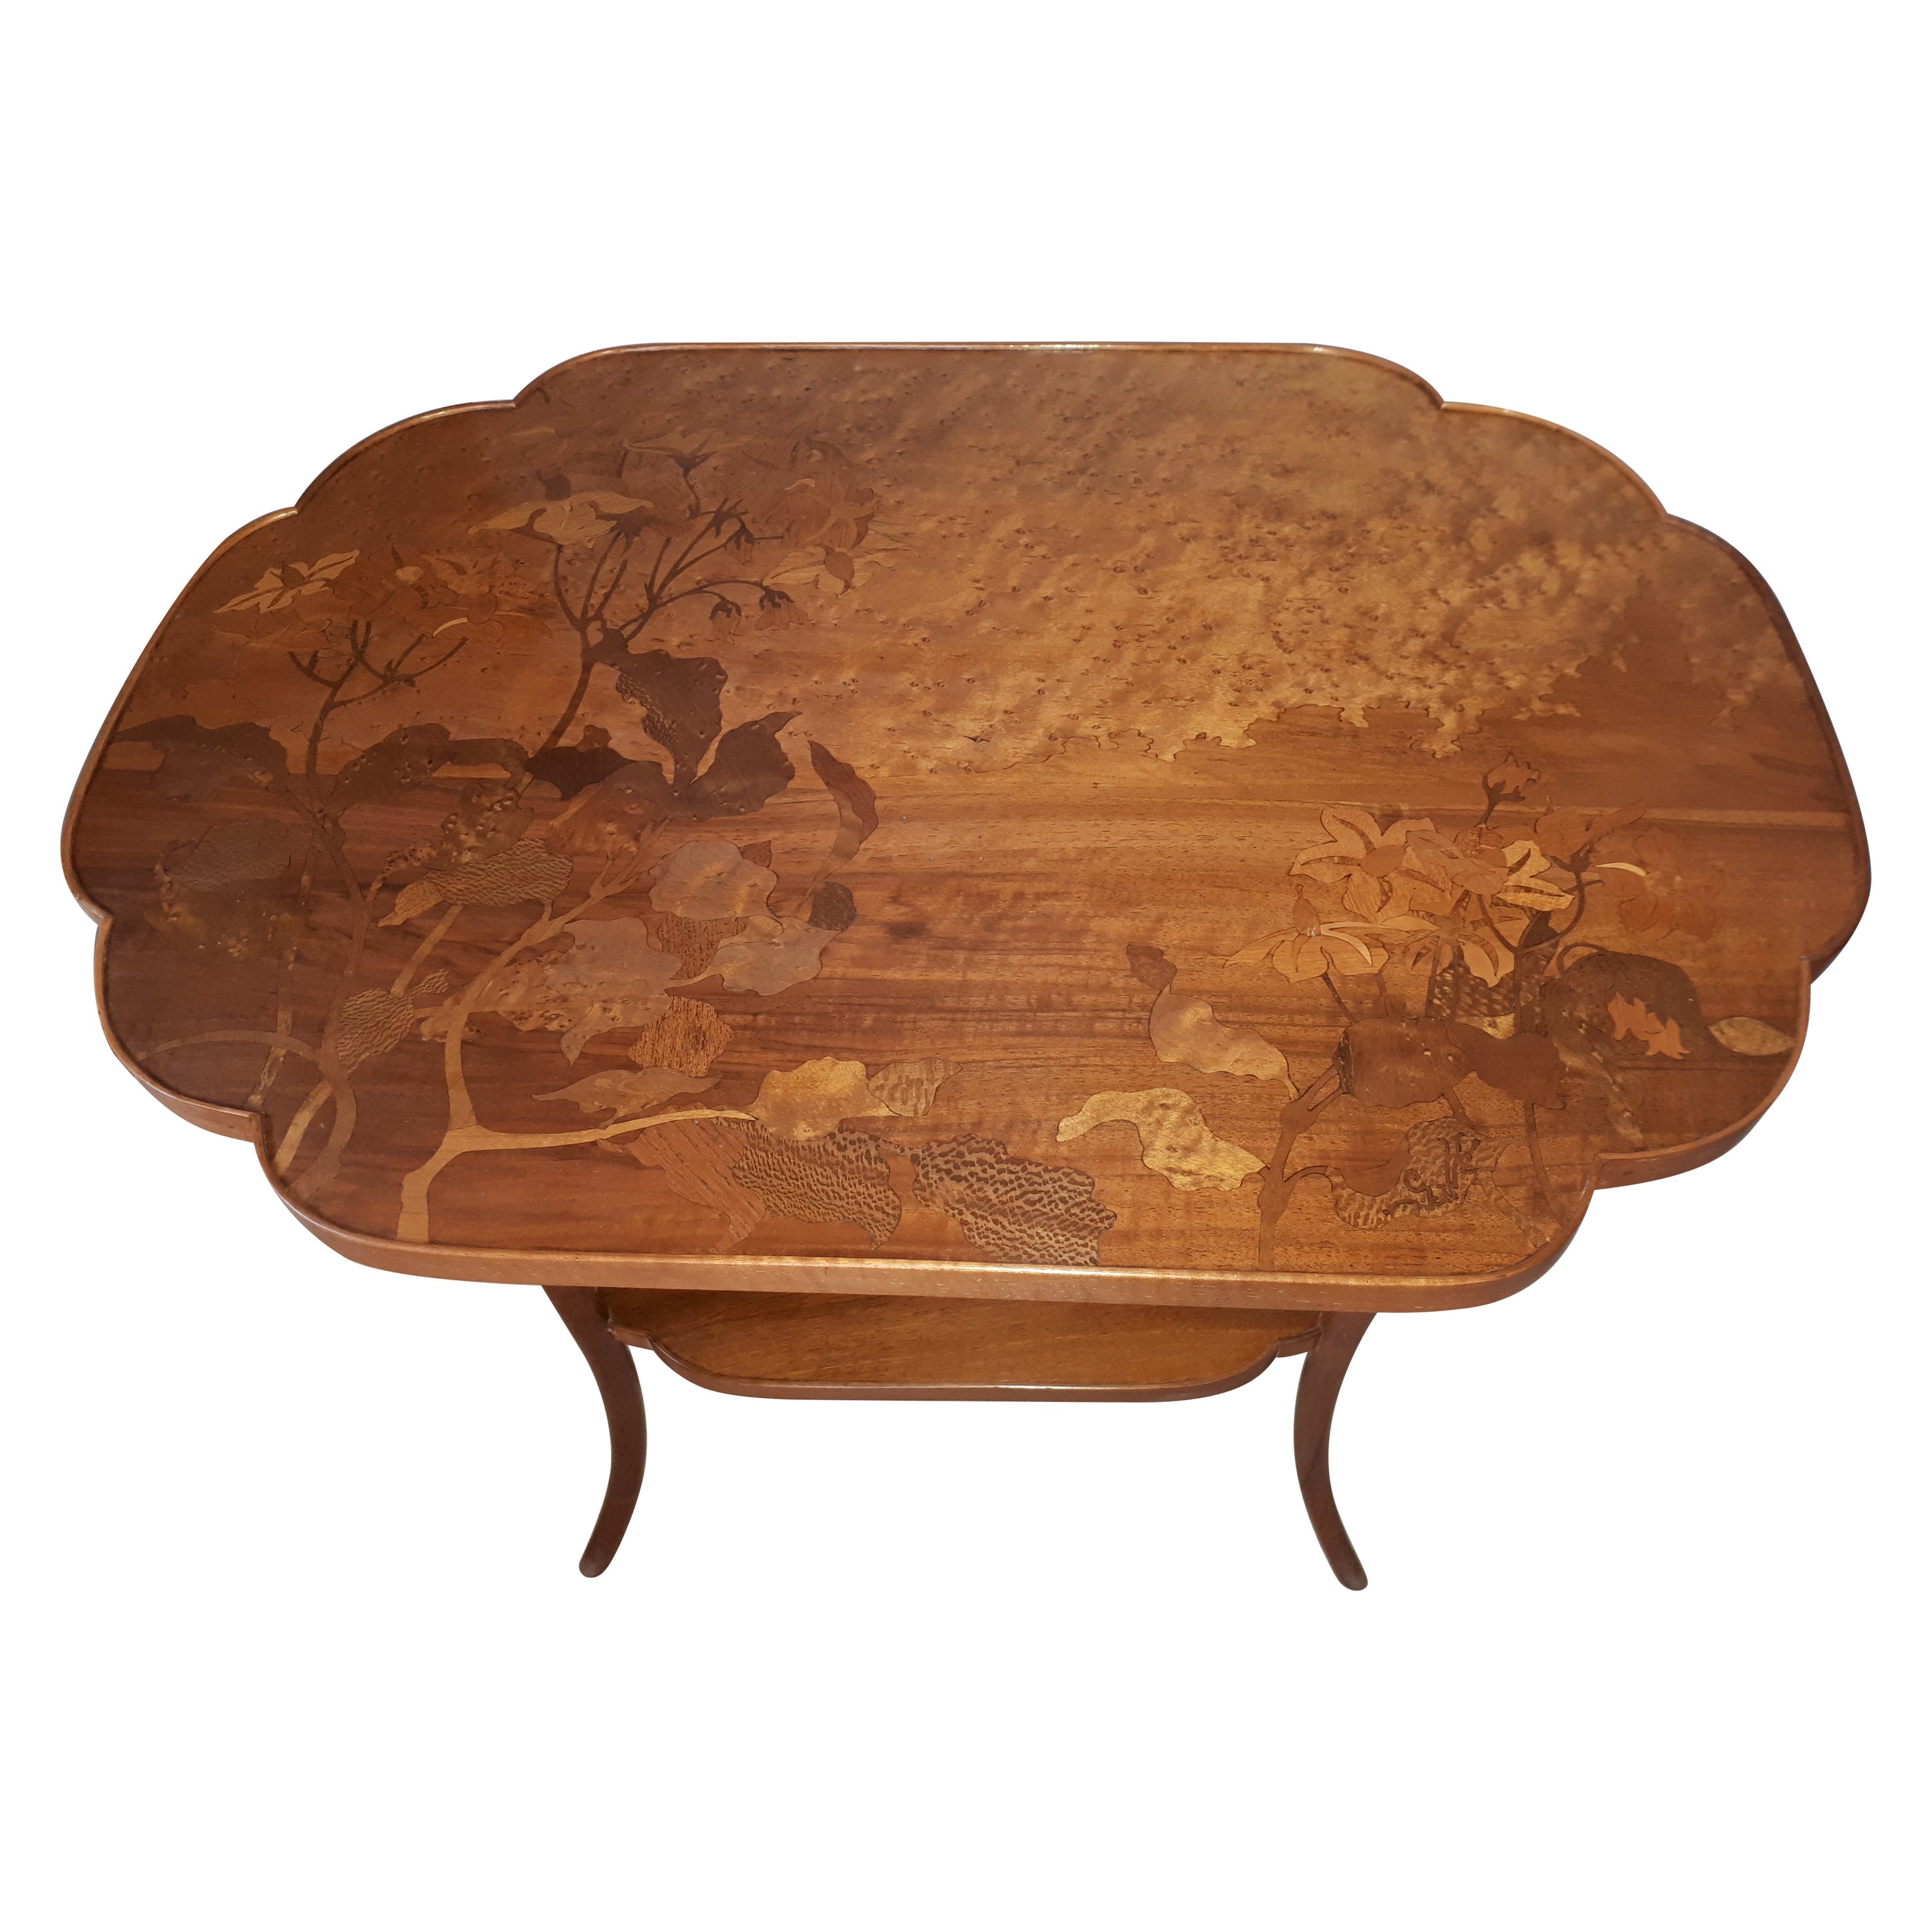 Gallé Art Nouveau Table With Hellebore Decor For Sale